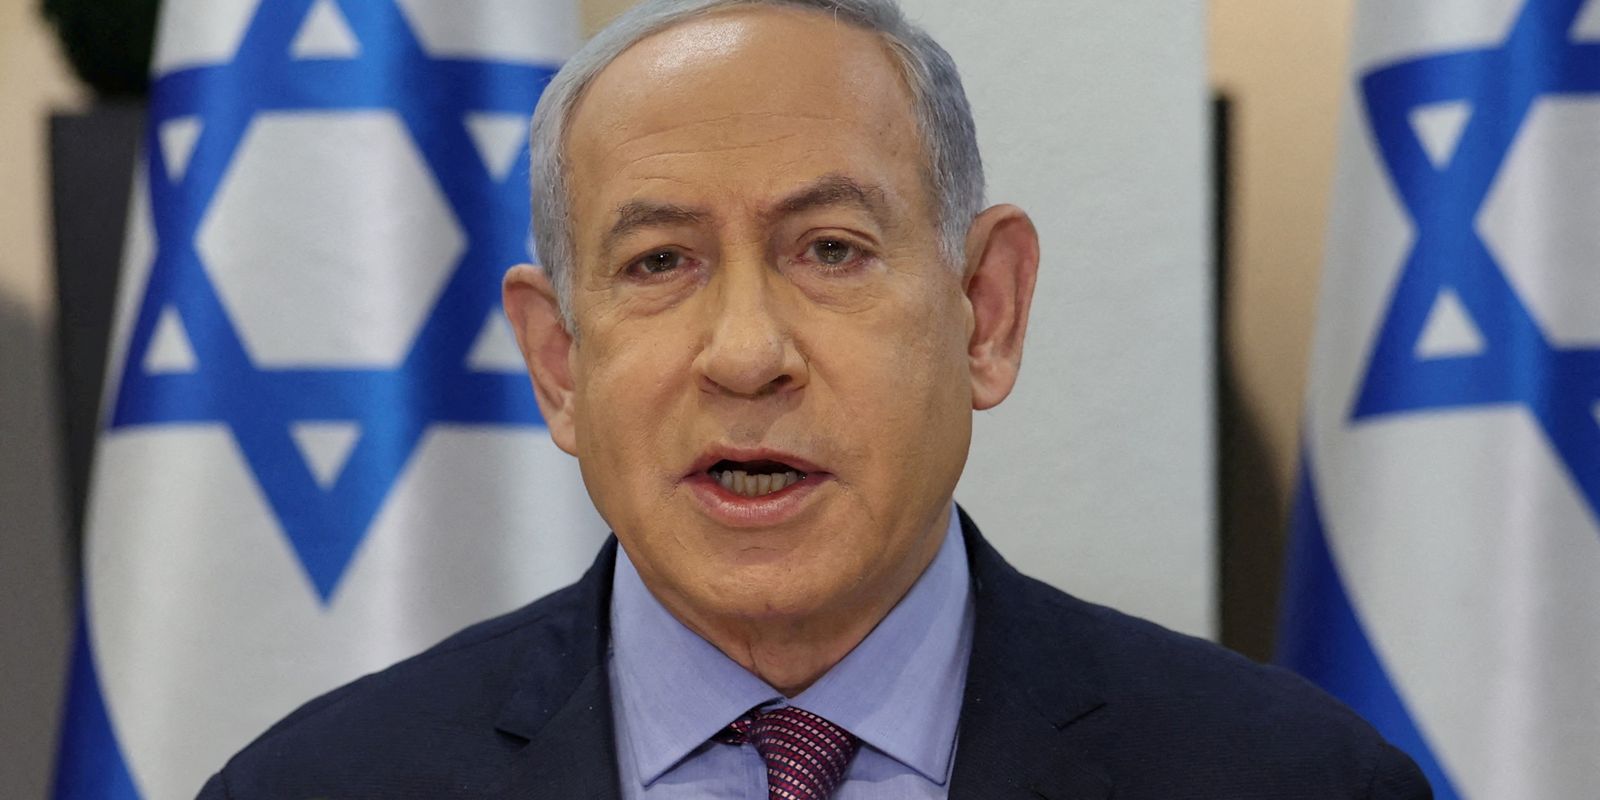 netanyahu-reage-a-fala-de-lula-sobre-holocausto-e-convoca-embaixador